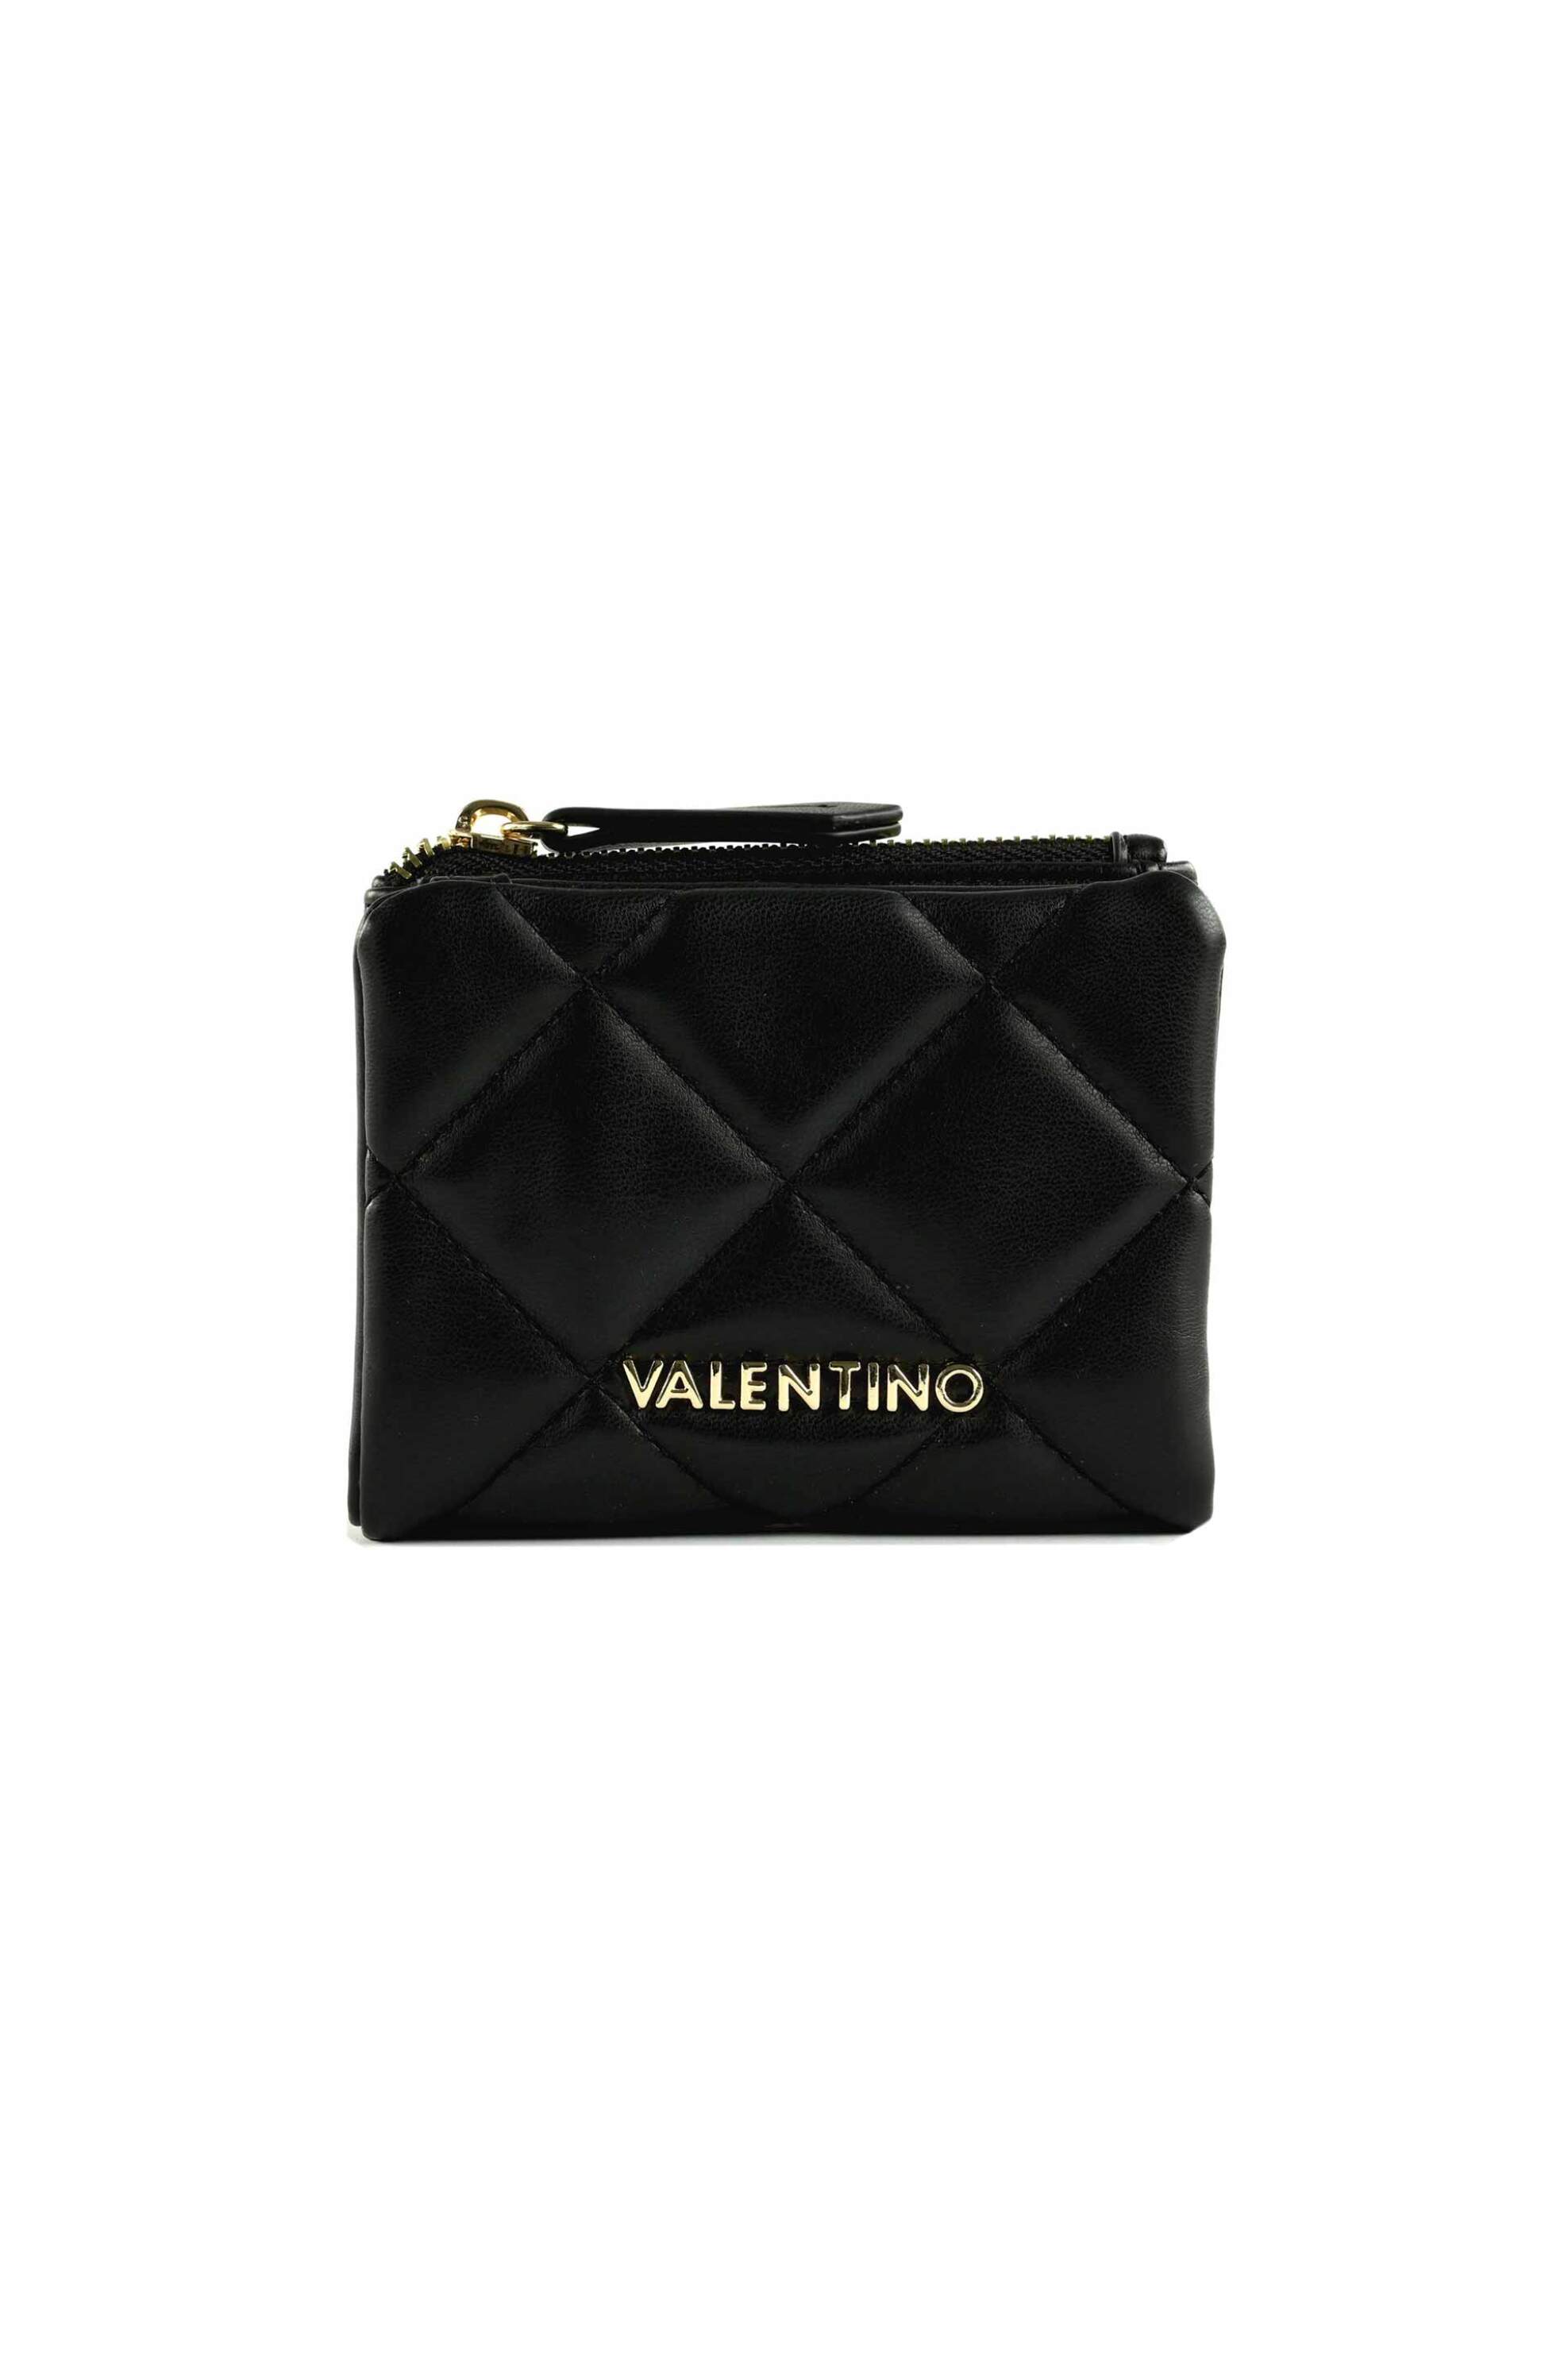 Γυναίκα > ΑΞΕΣΟΥΑΡ > Πορτοφόλια & Θήκες Valentino γυναικείο πορτοφόλι μονόχρωμο με μεταλλικό logo "Ocarina" - 55KVPS3KK105R/O Μαύρο